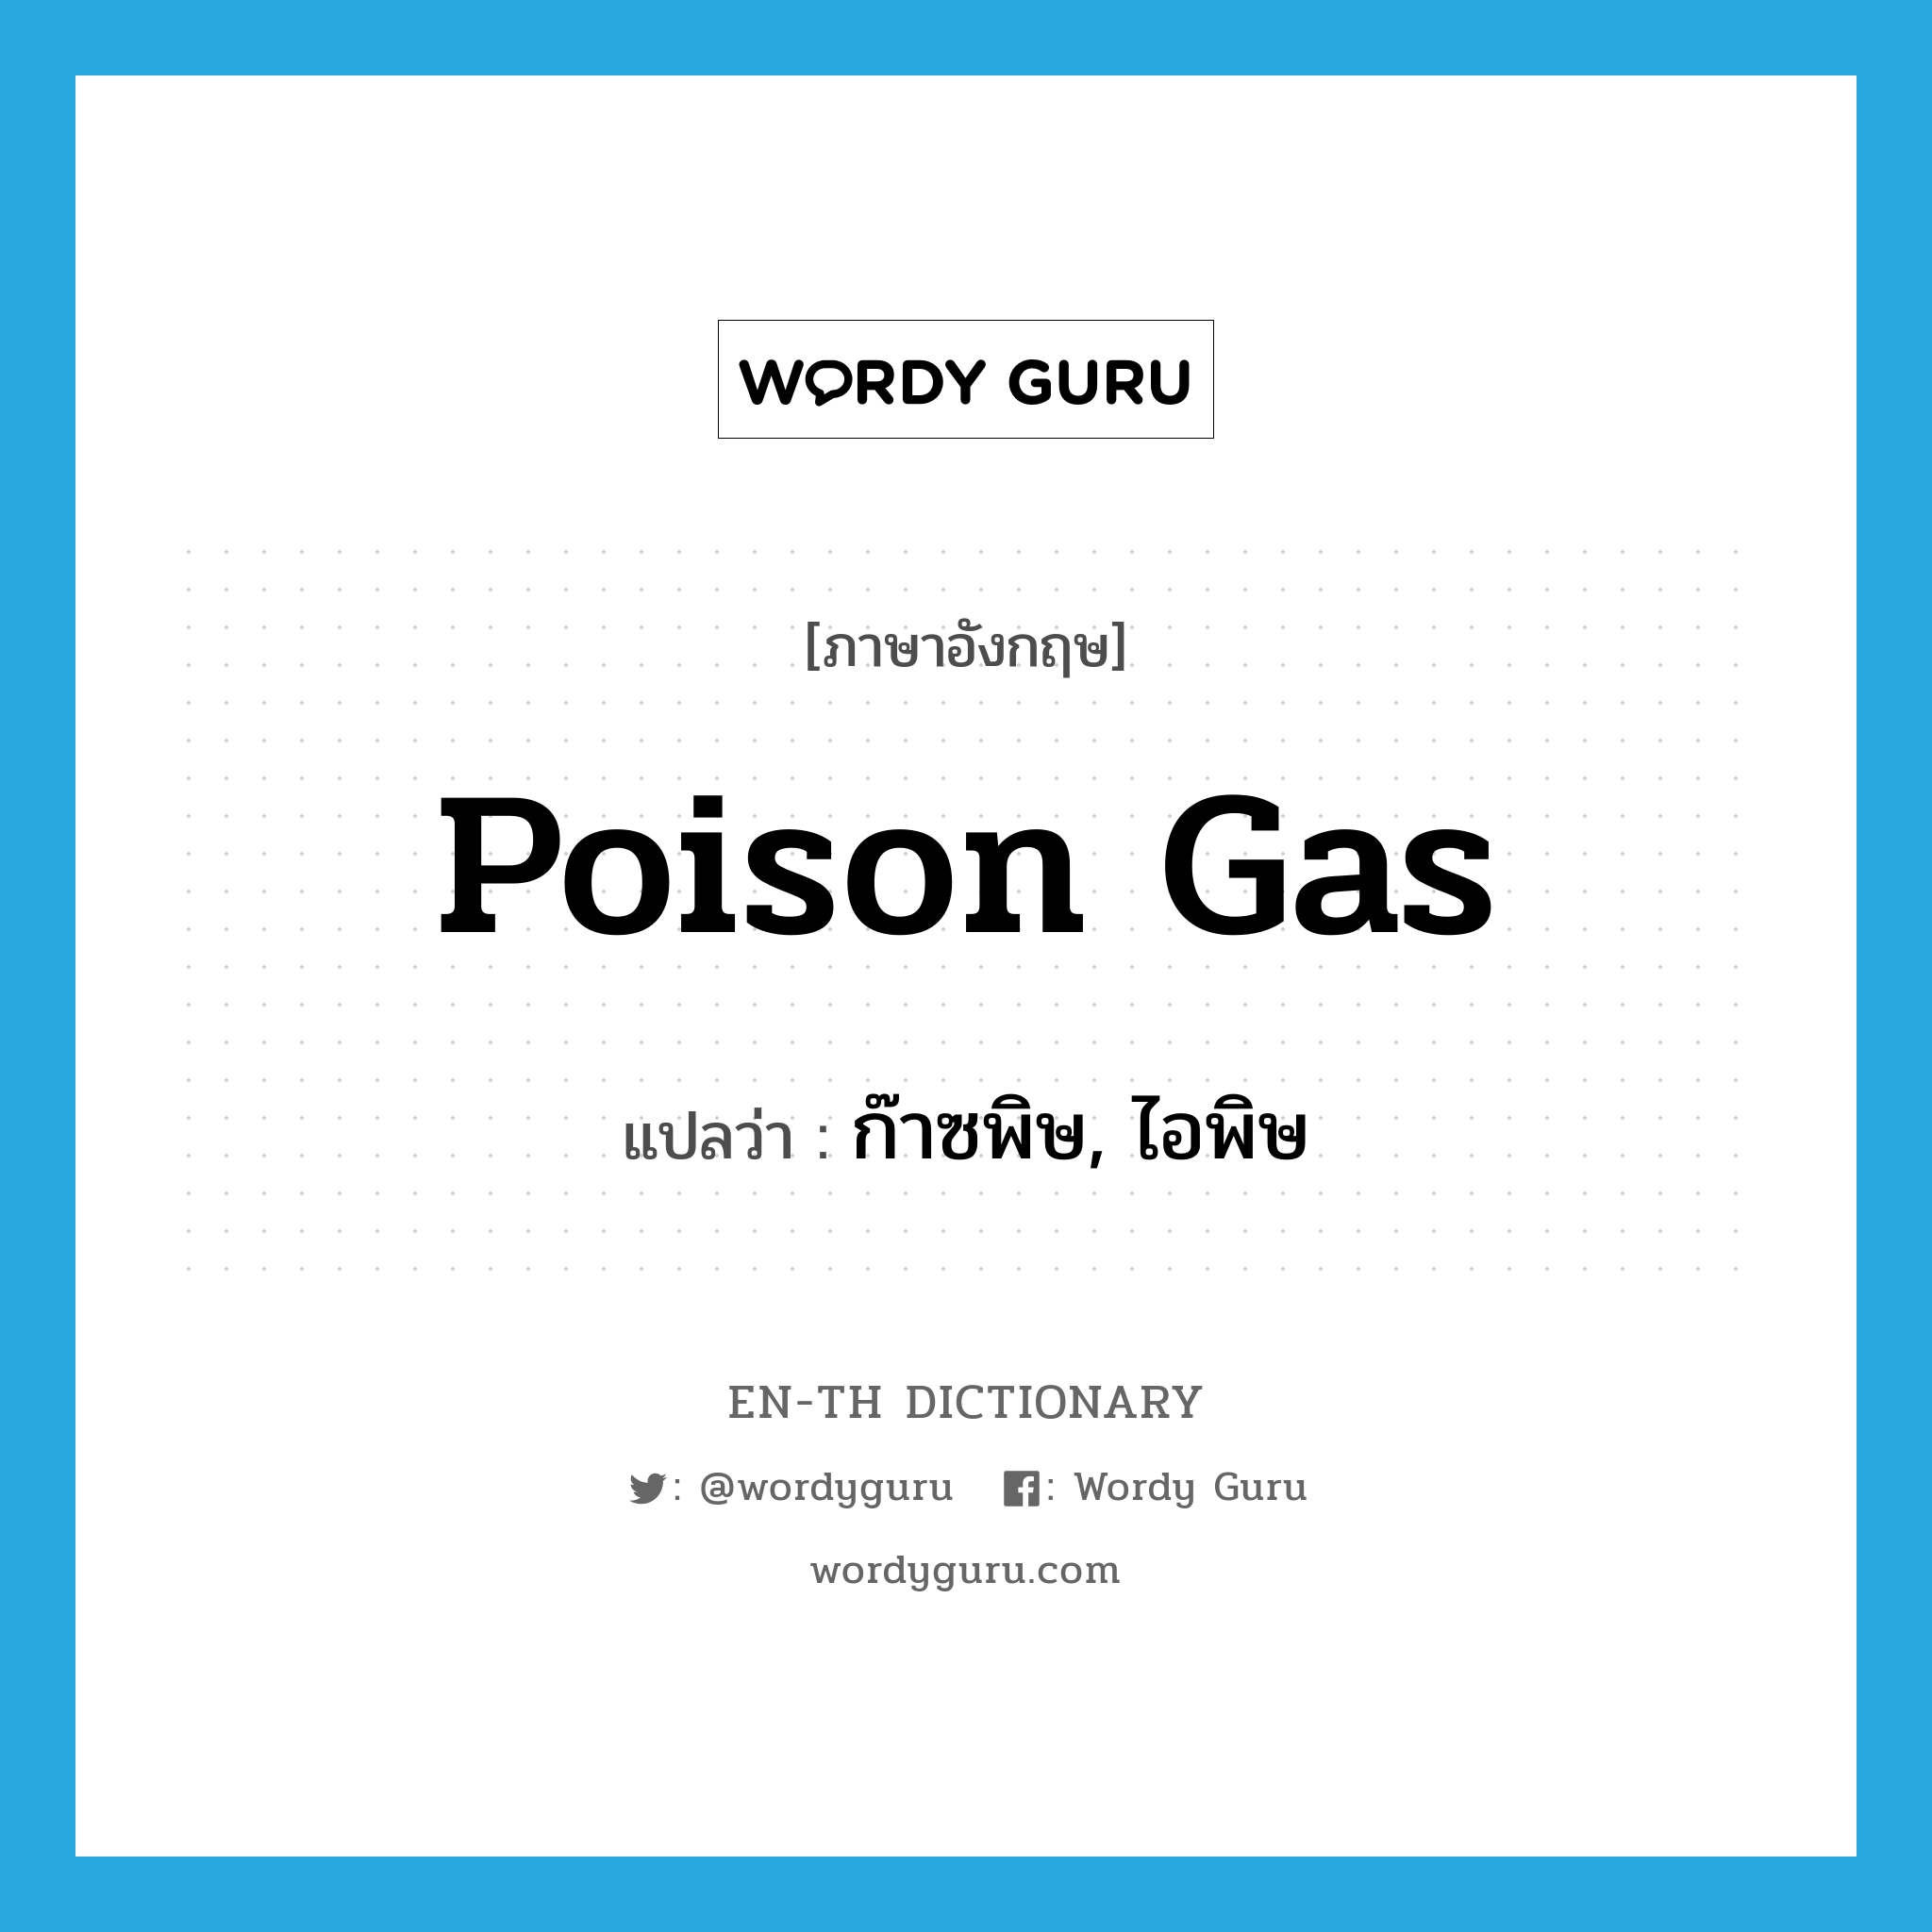 ก๊าซพิษ, ไอพิษ ภาษาอังกฤษ?, คำศัพท์ภาษาอังกฤษ ก๊าซพิษ, ไอพิษ แปลว่า poison gas ประเภท N หมวด N